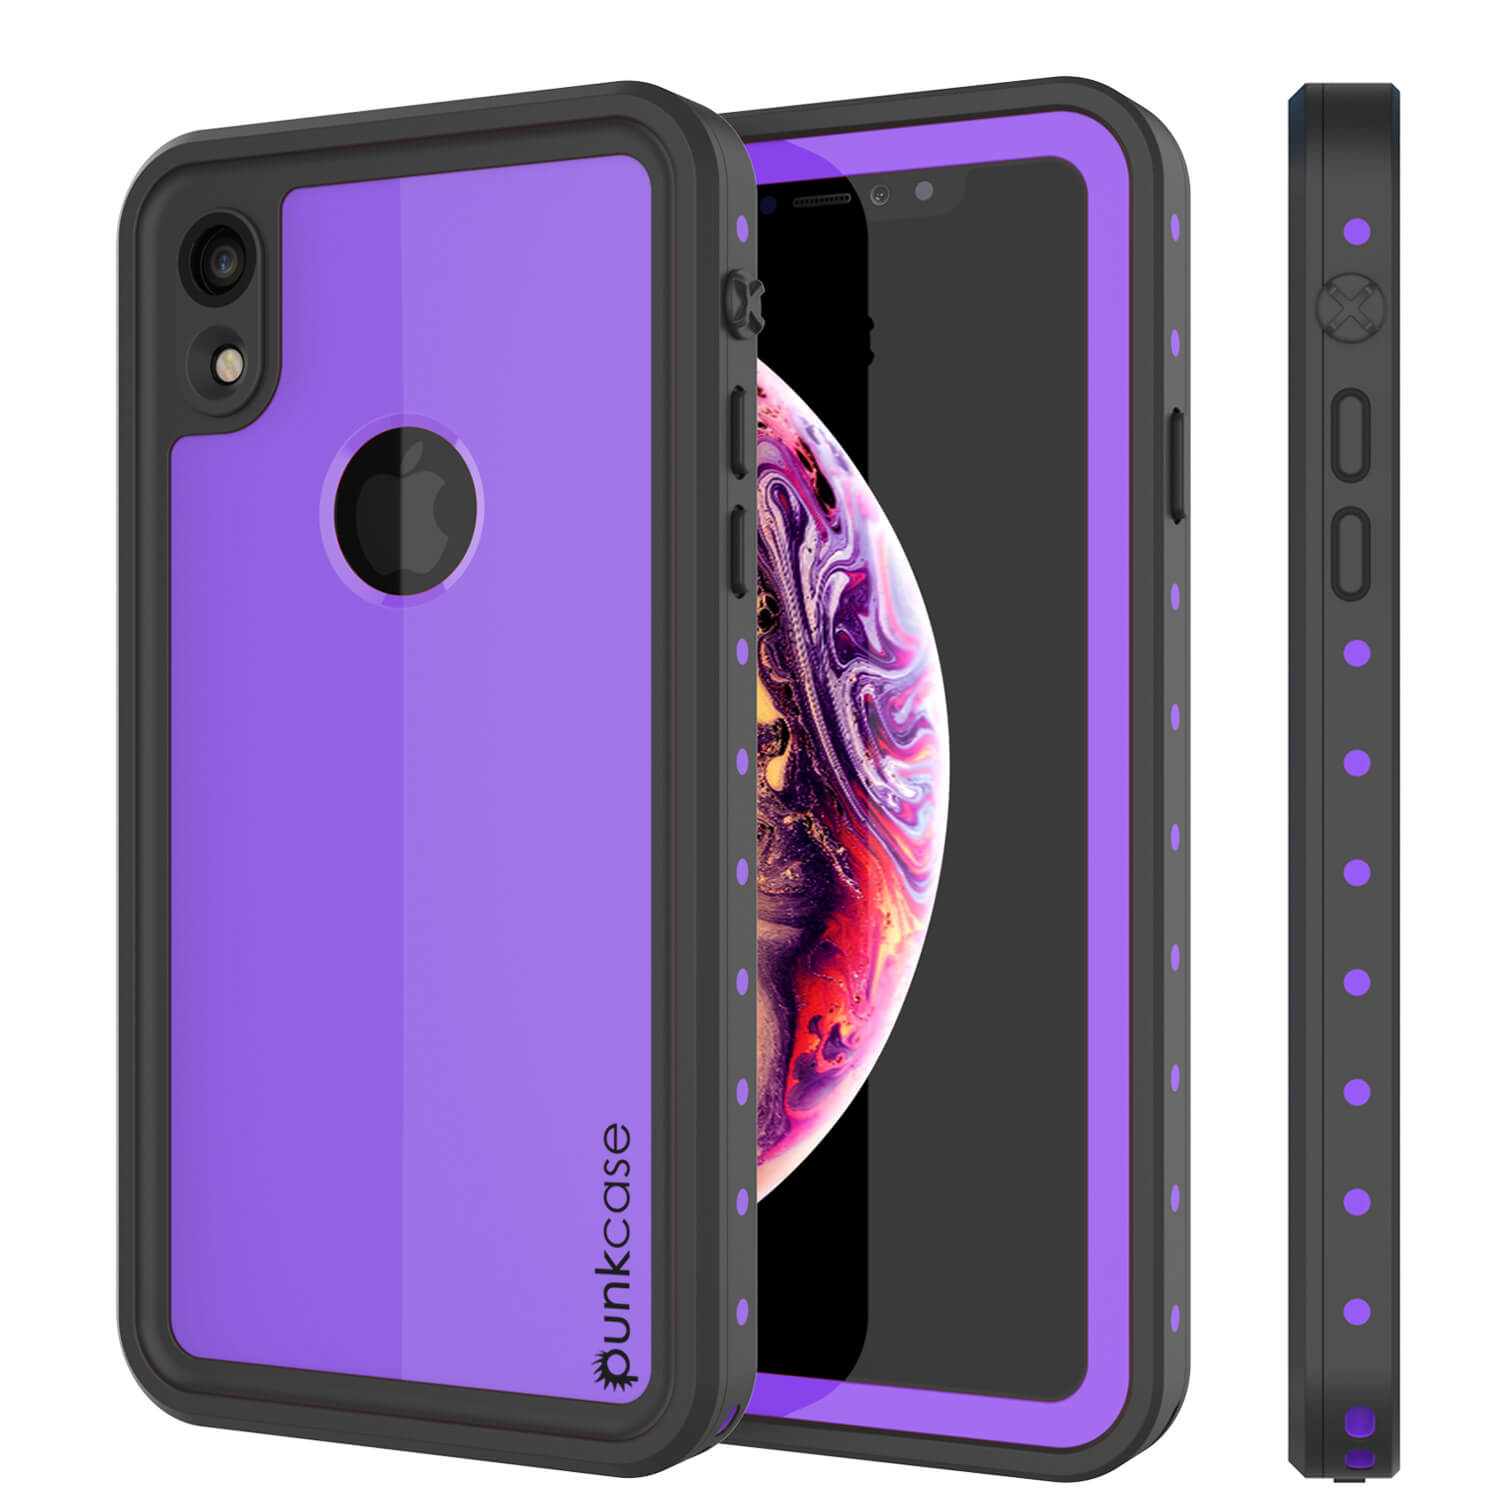 iPhone XR Waterproof IP68 Case, Punkcase [Purple] [StudStar Series] [Slim Fit] [Dirtproof] (Color in image: purple)